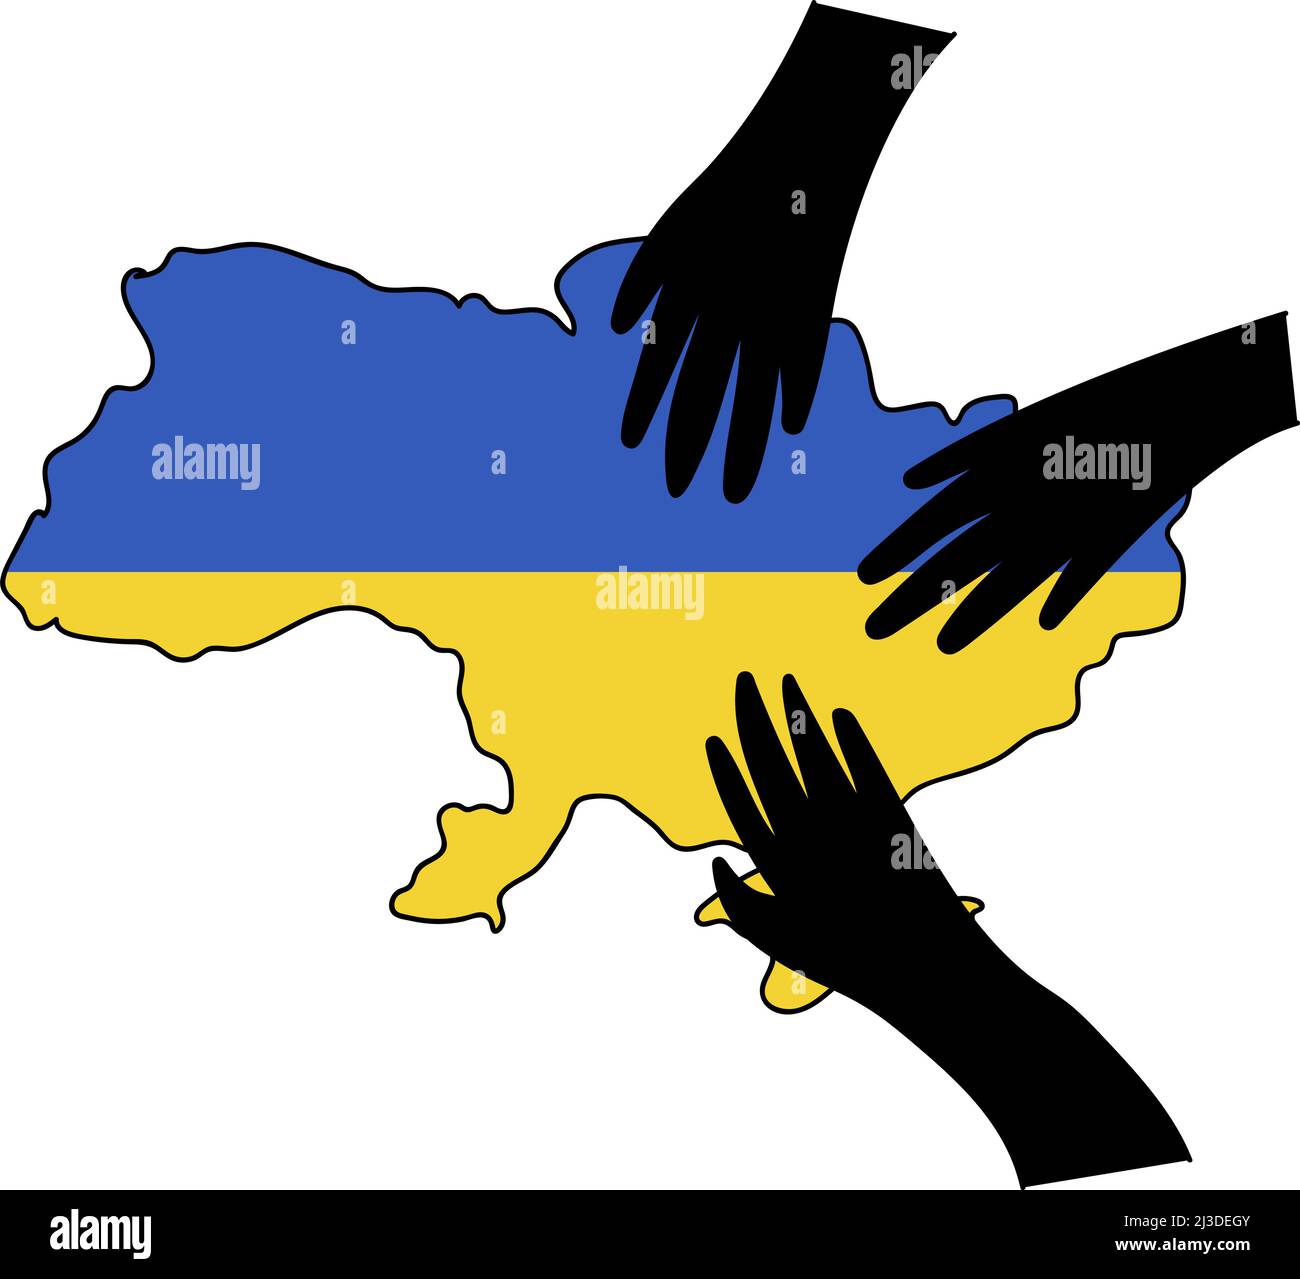 Stop War in Ukraine concept vector illustration. Russian hands on Ukrainian map. Ukrainian flag illustration. Save Ukraine from Russia. Stock Vector